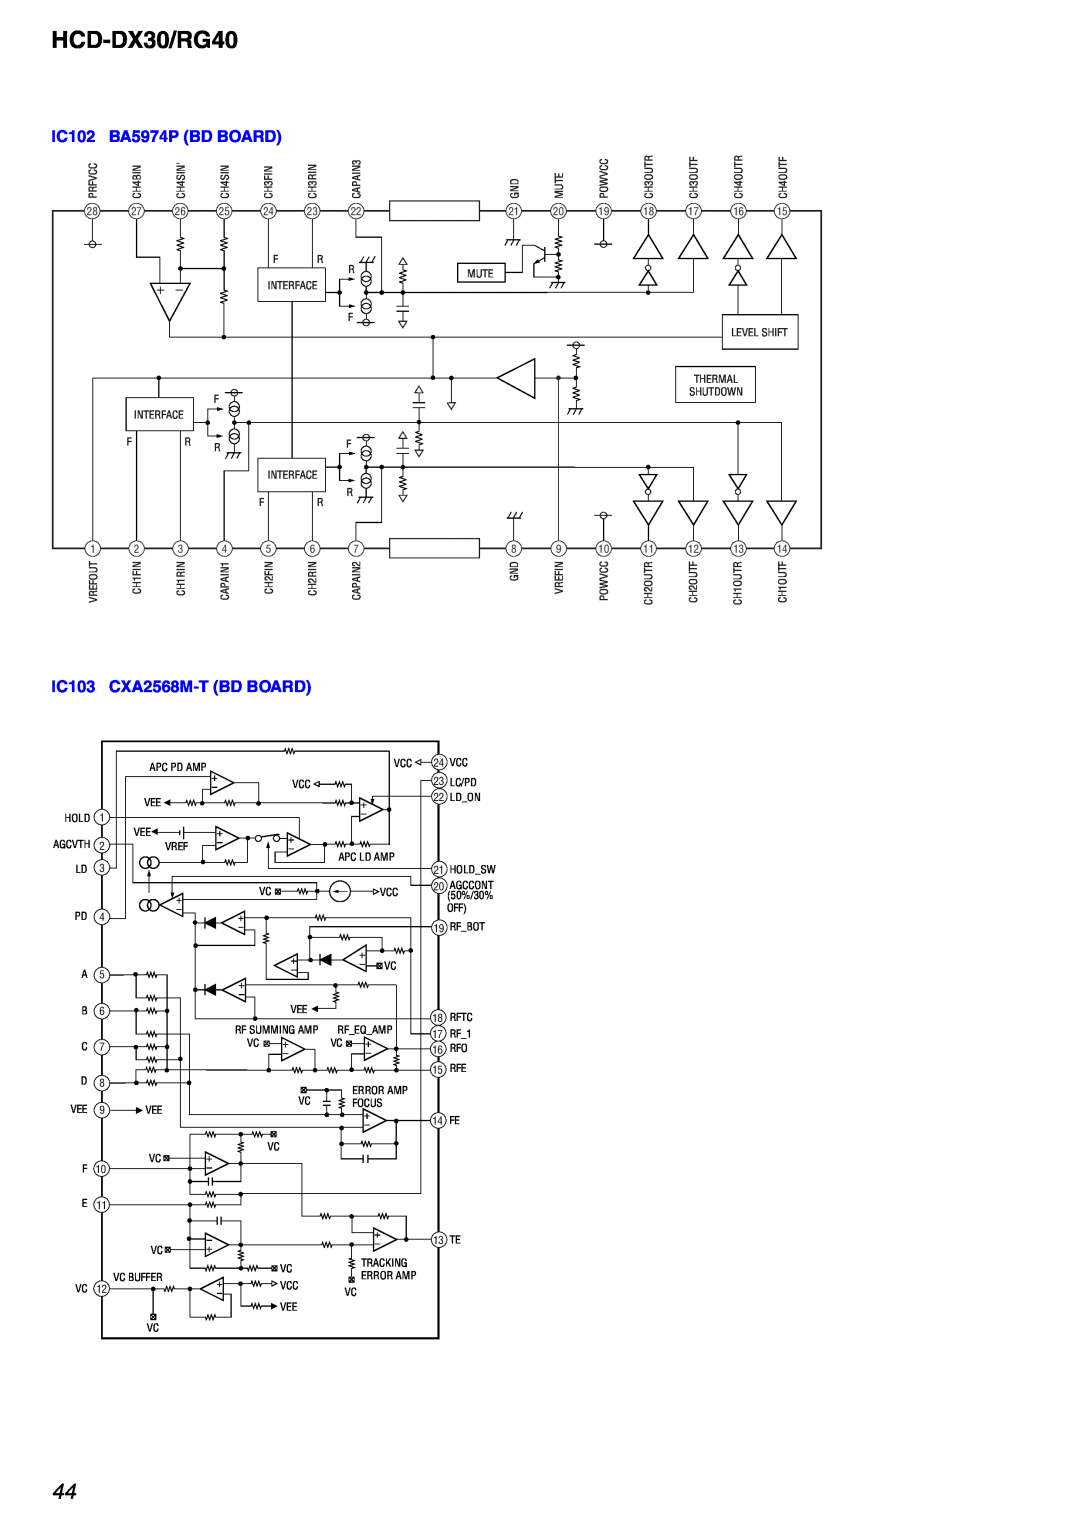 Sony HCD-RG40 specifications HCD-DX30/RG40, IC102 BA5974P BD BOARD, IC103, CXA2568M-TBD BOARD 